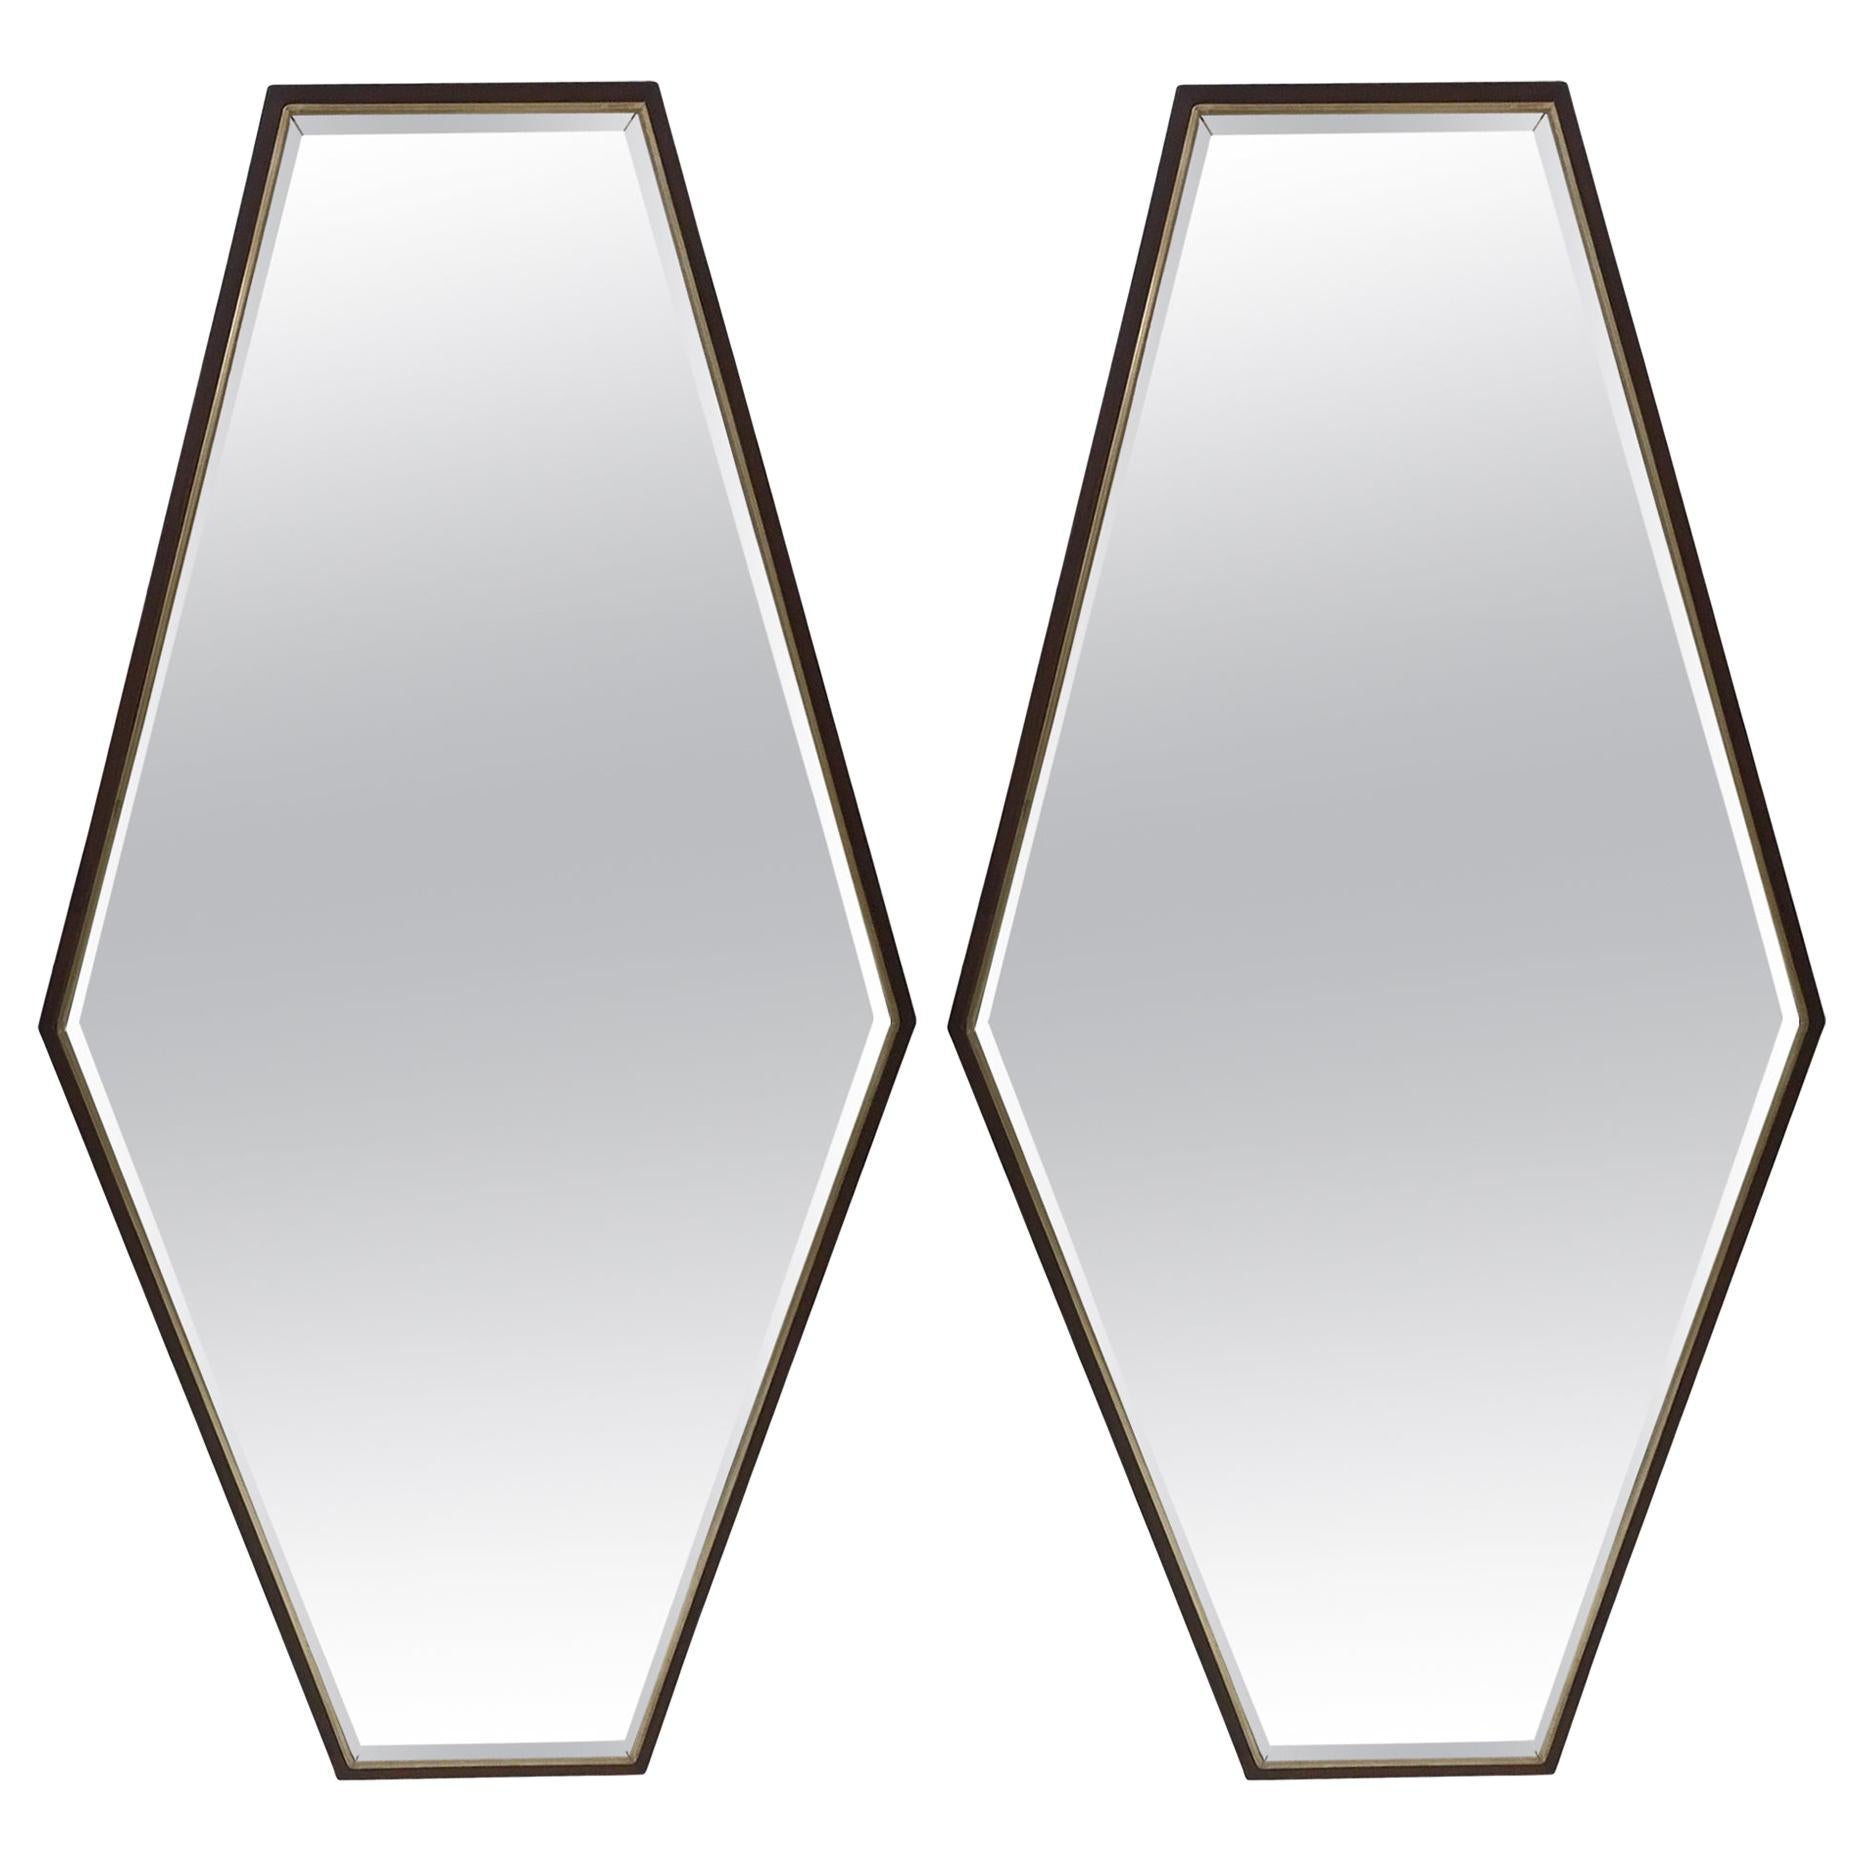 Pair of Walnut Diamond Mirrors